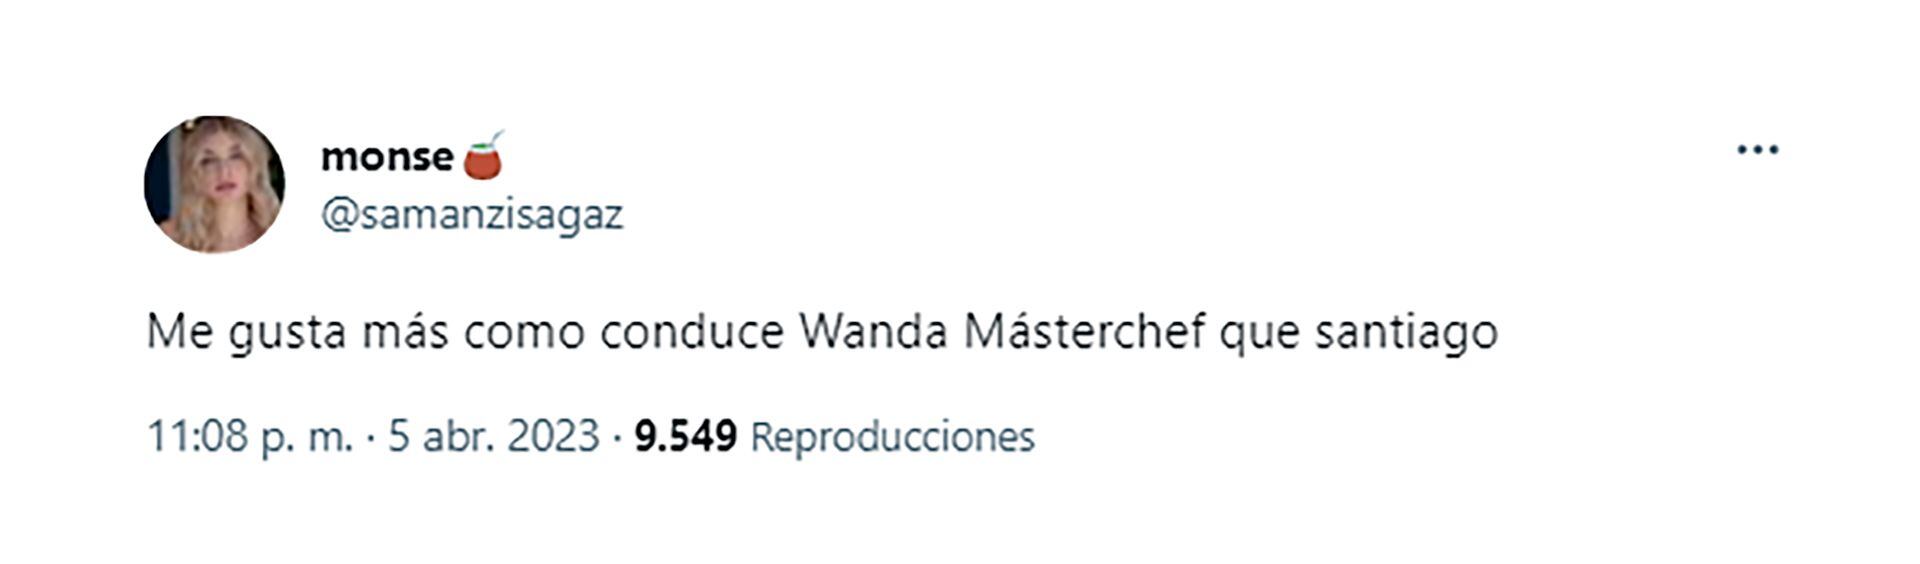 Tweet Wanda Masterchef